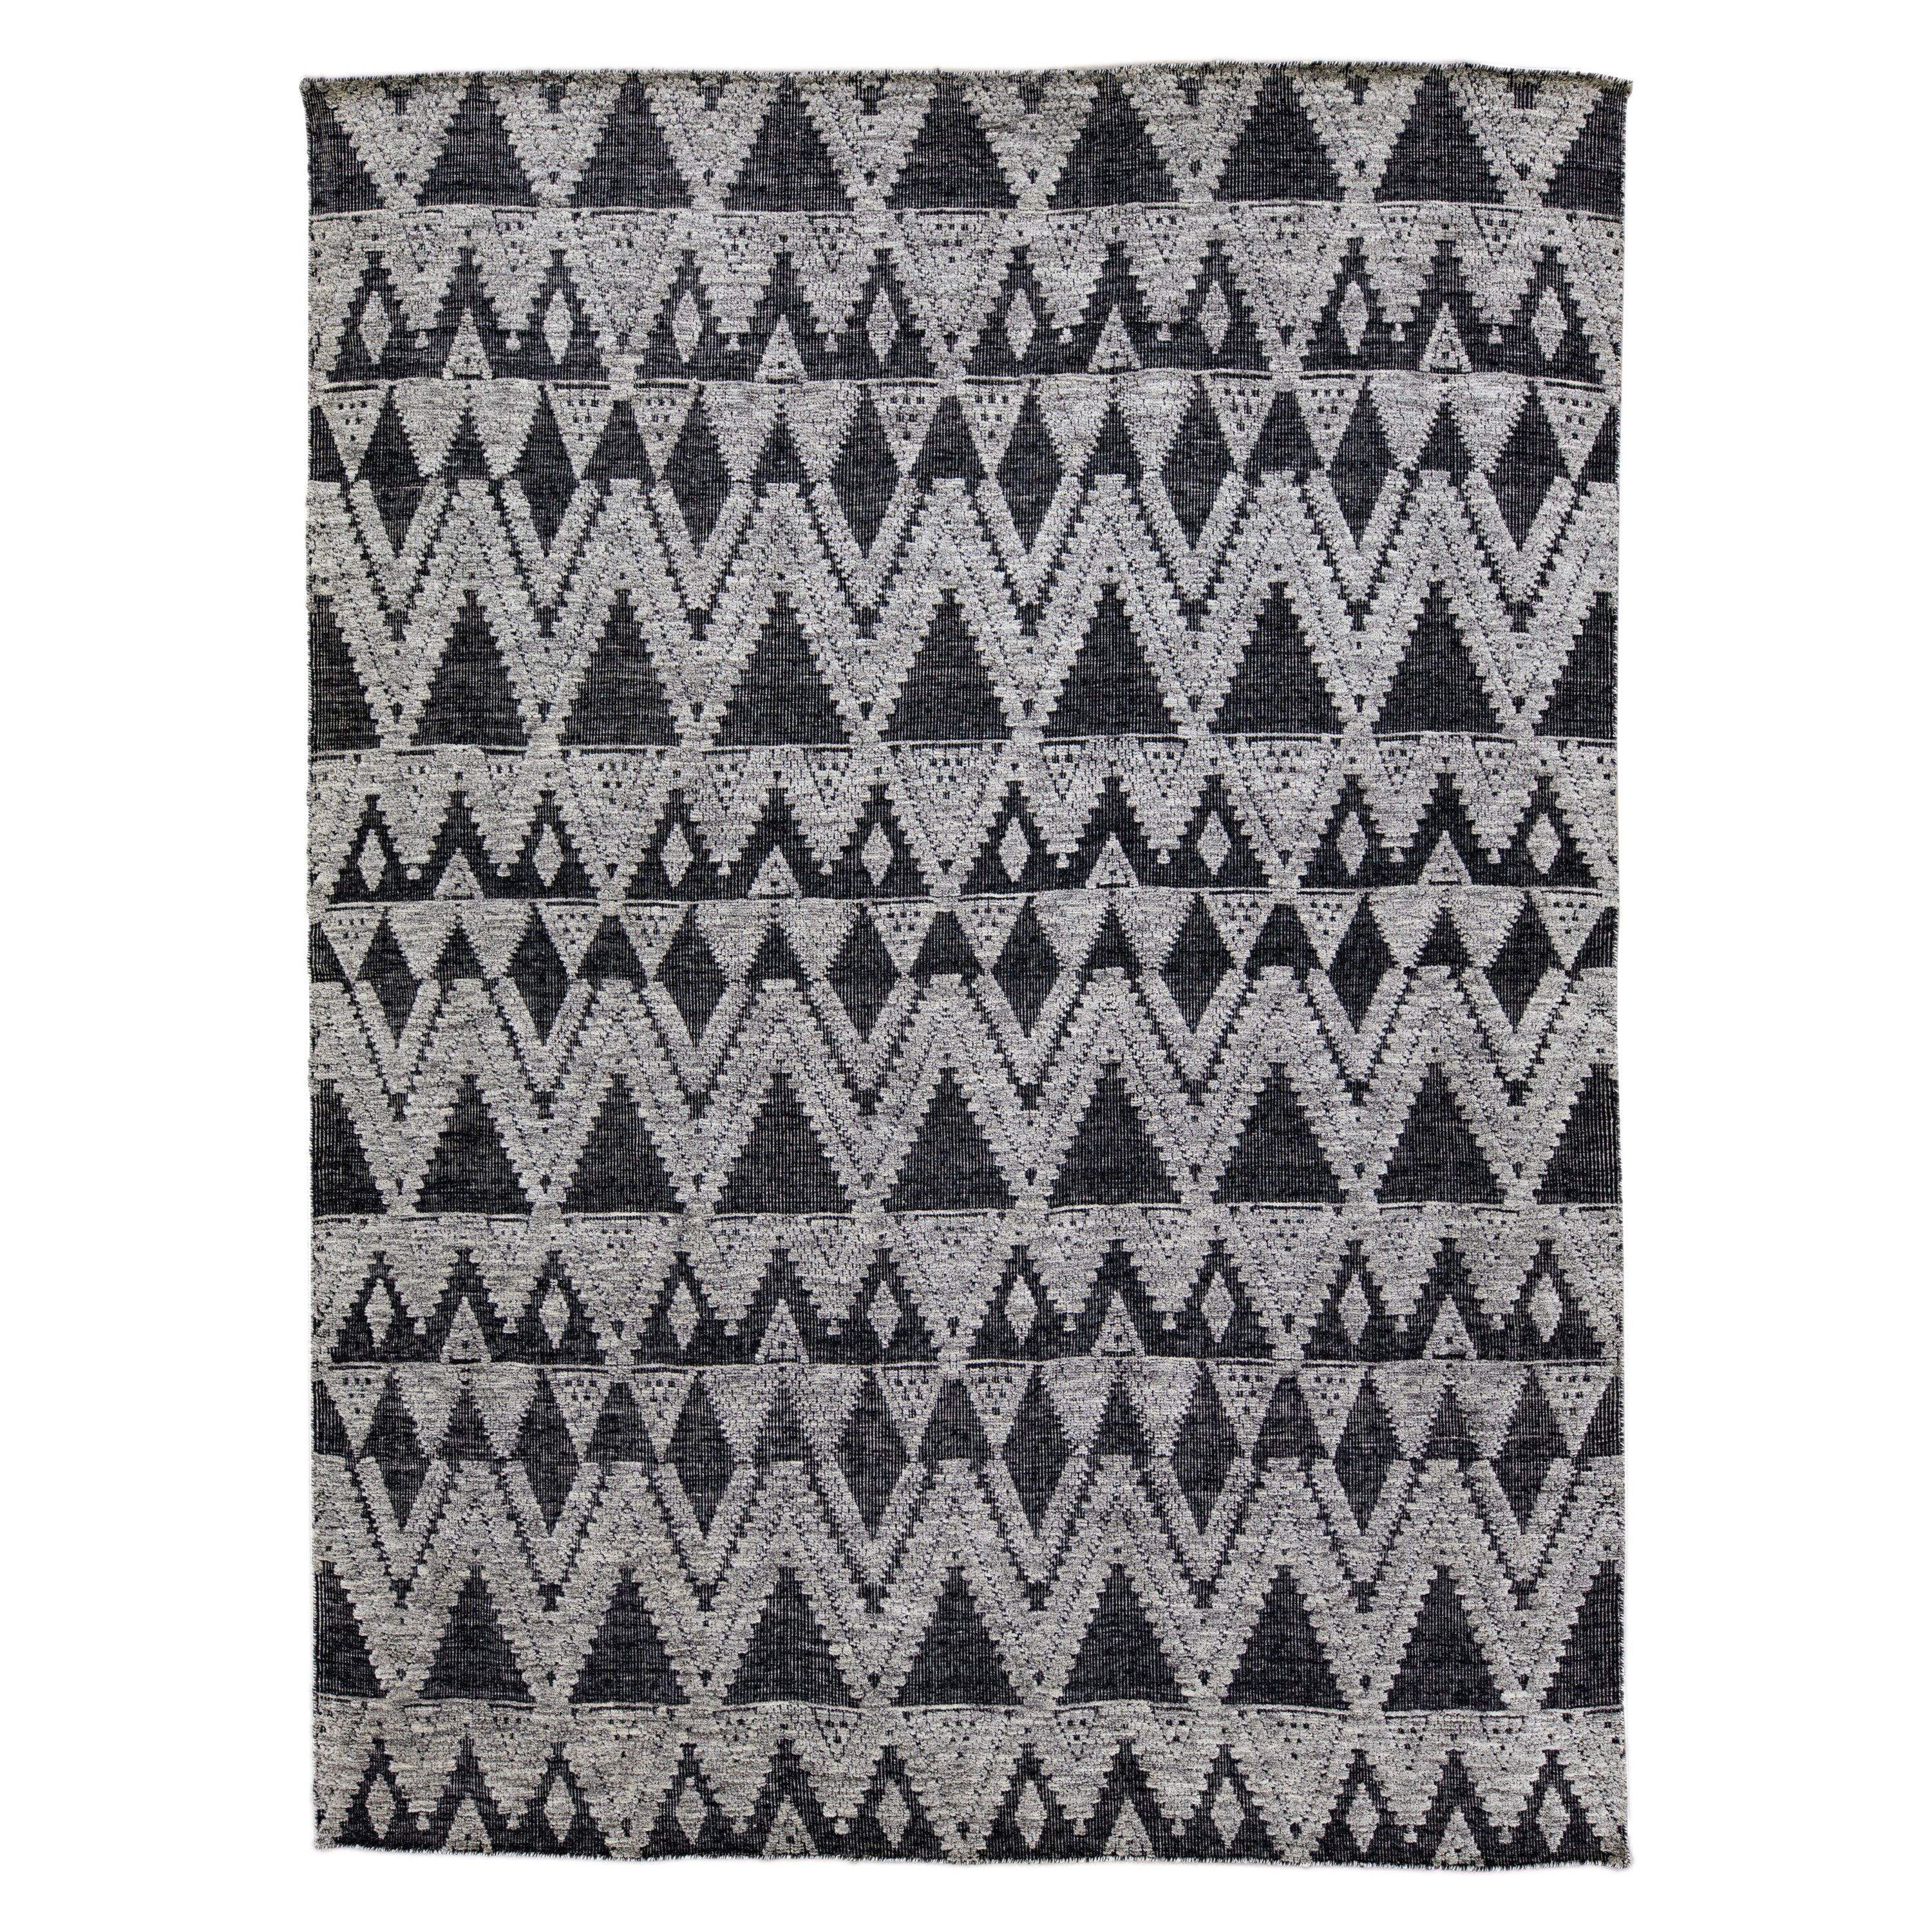 Tapis moderne en laine Safi de la collection Apadana, fait à la main, de couleur anthracite et grise